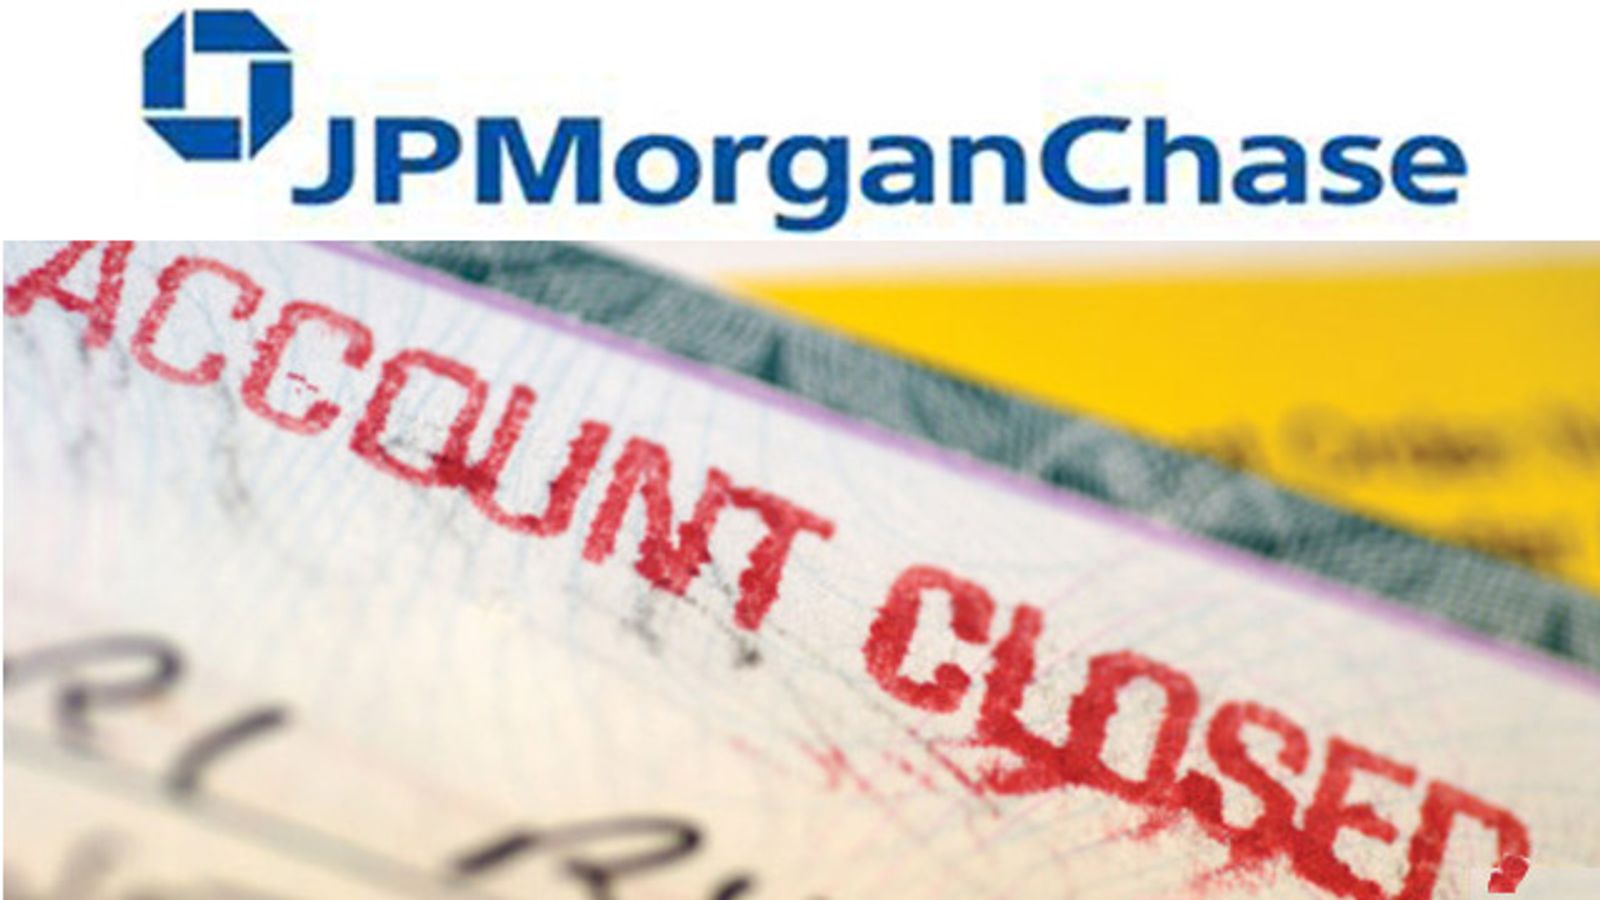 JPMorgan Chase Closes Porn Star Accounts, Citing... 'Ethics'!?!